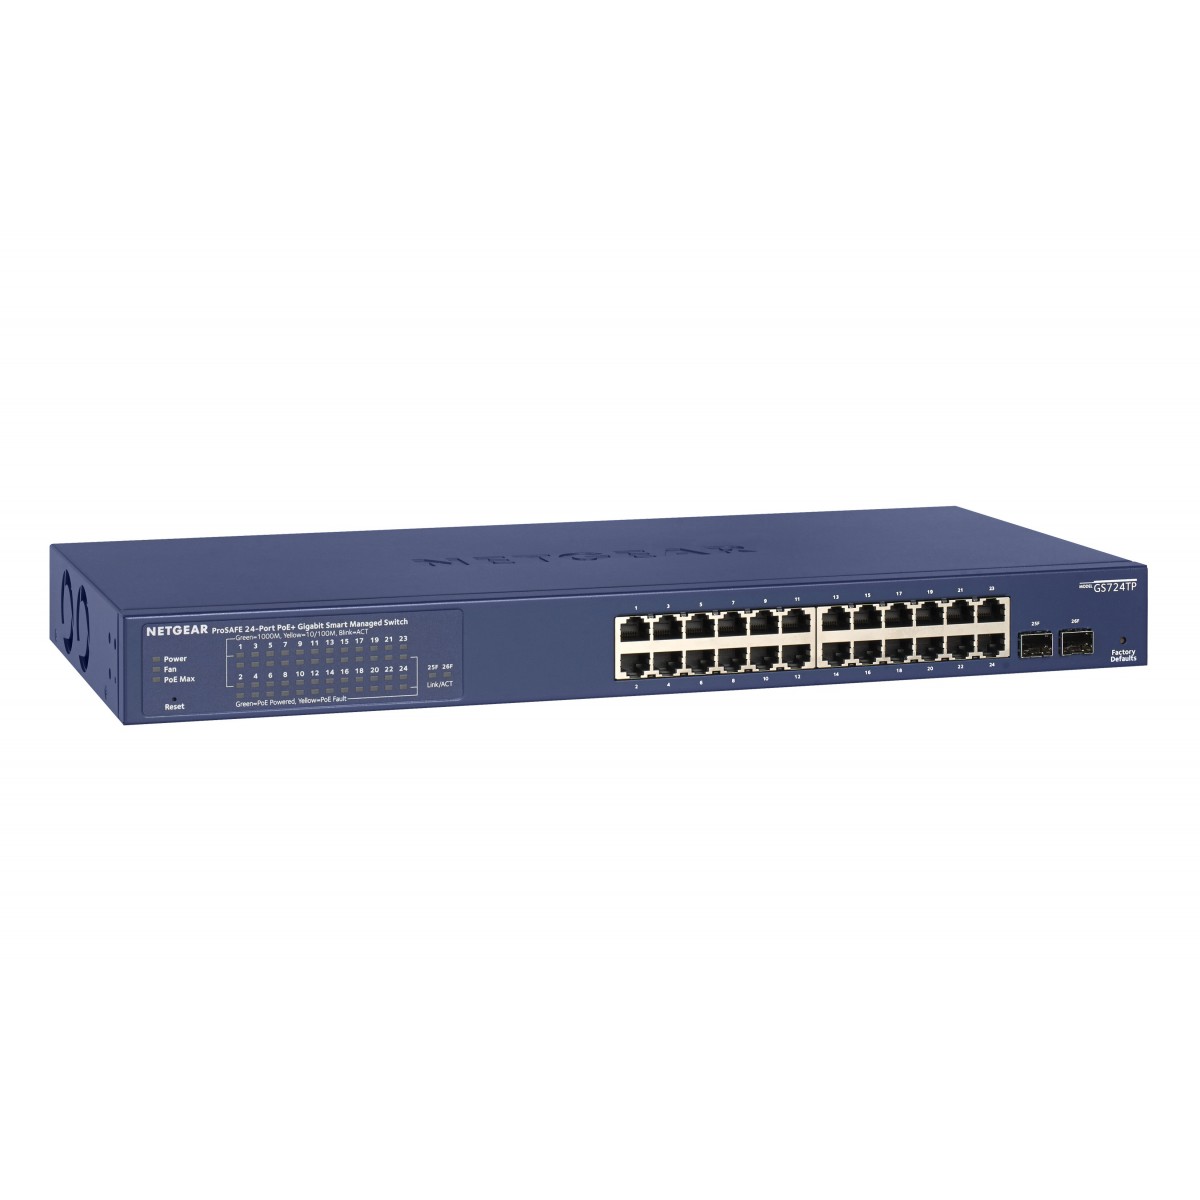 Netgear GS724TP - Managed - L2/L3/L4 - Gigabit Ethernet (10/100/1000) - Power over Ethernet (PoE) - Rack mounting - 1U